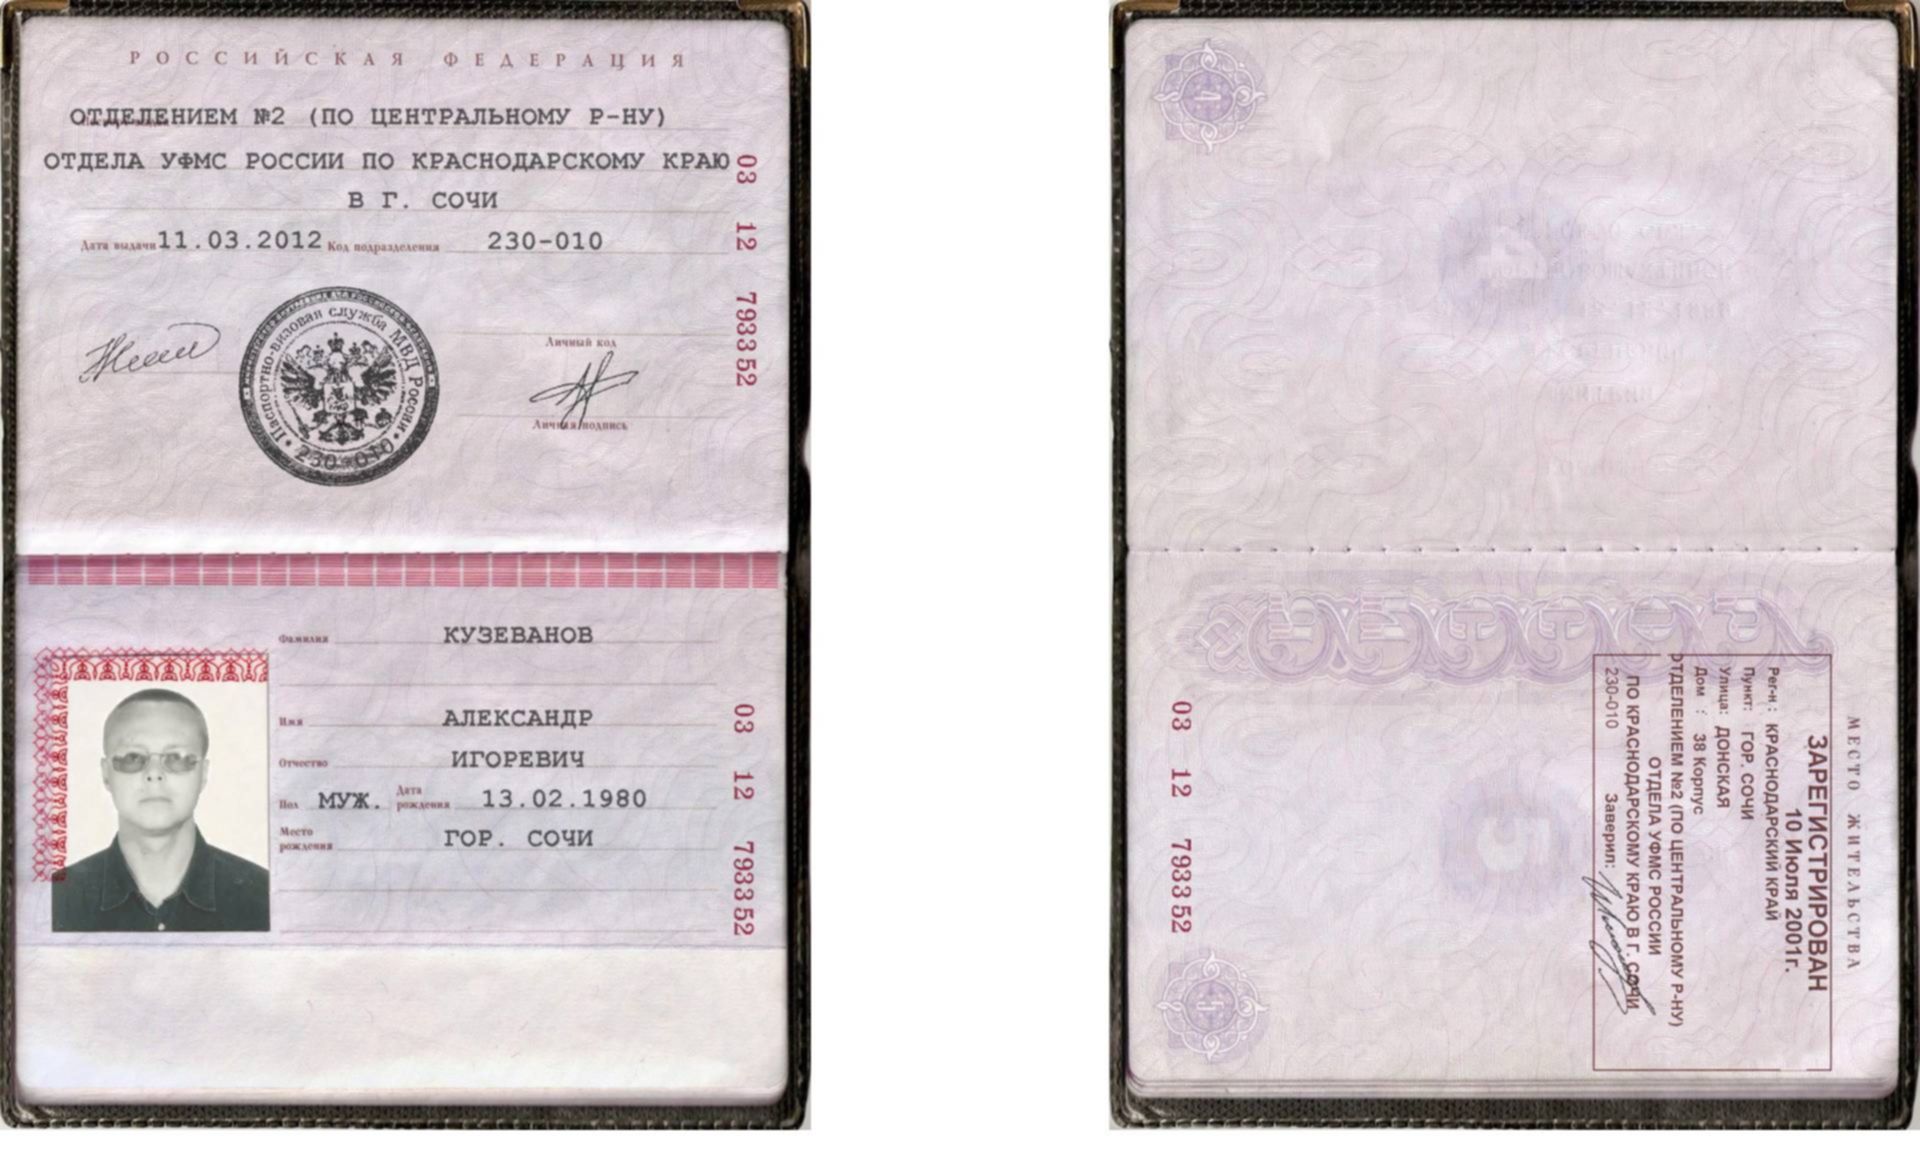 Законно ли требование авито о предоставлении фото паспорта